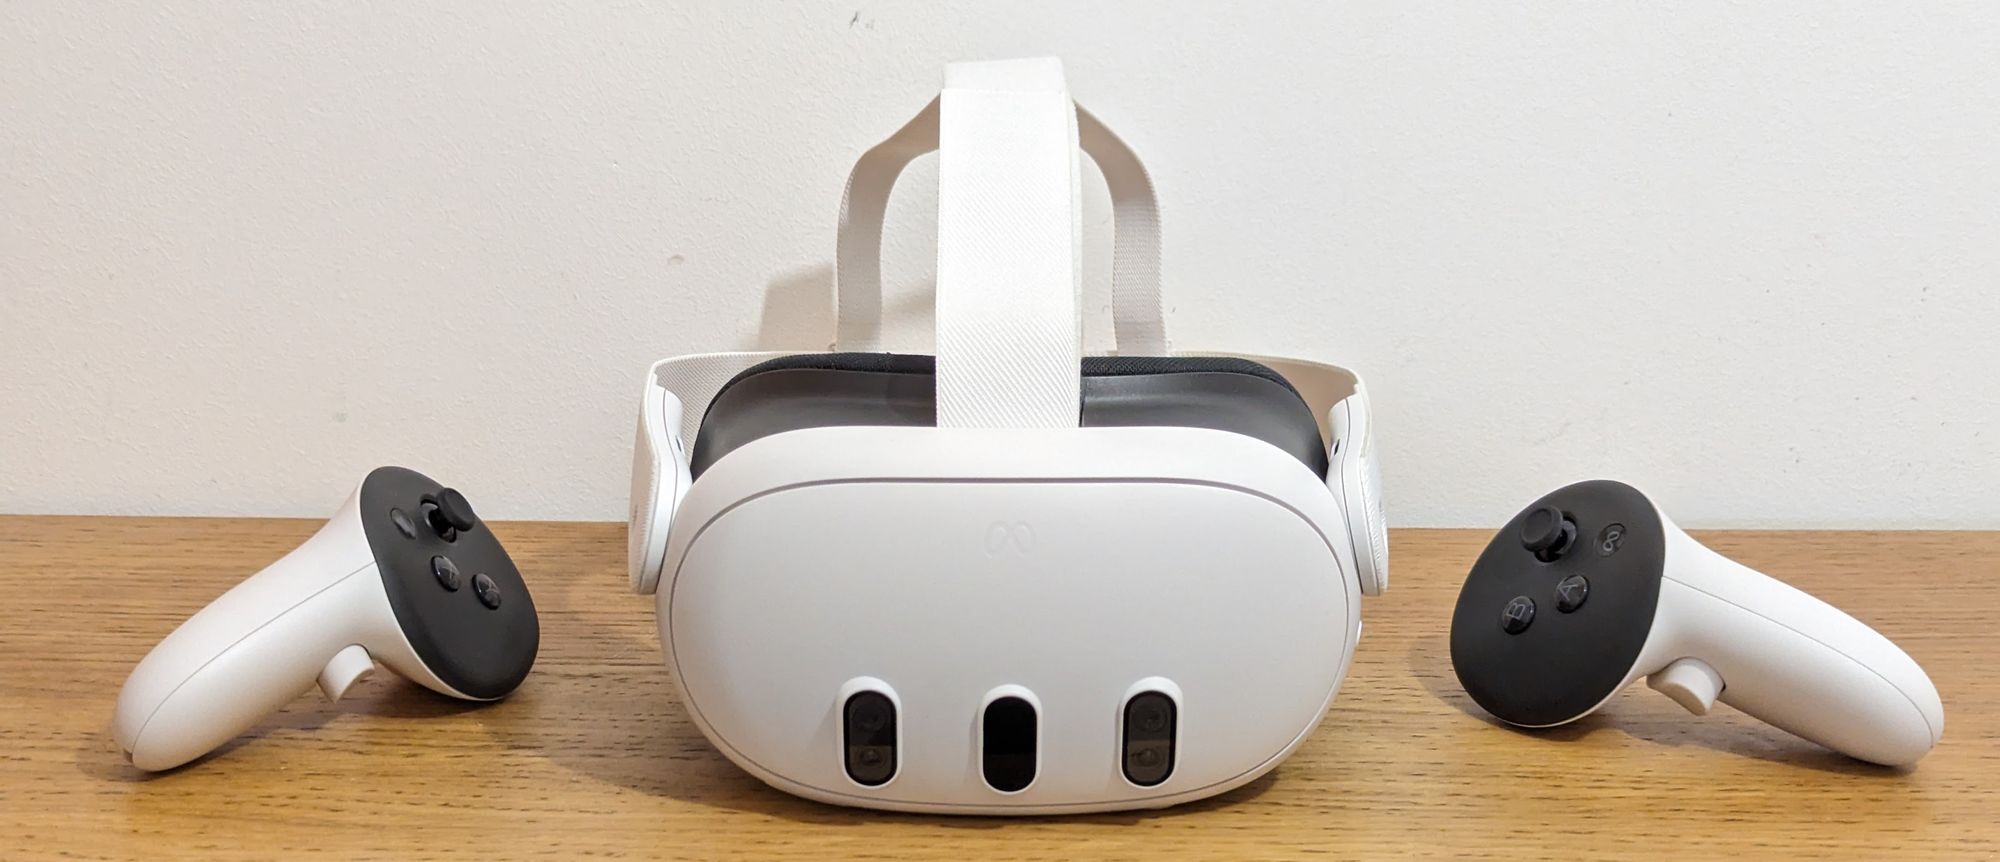 VR Headset Comparison – Quest 3, Quest 2, Quest Pro, Pico 4, and Apple